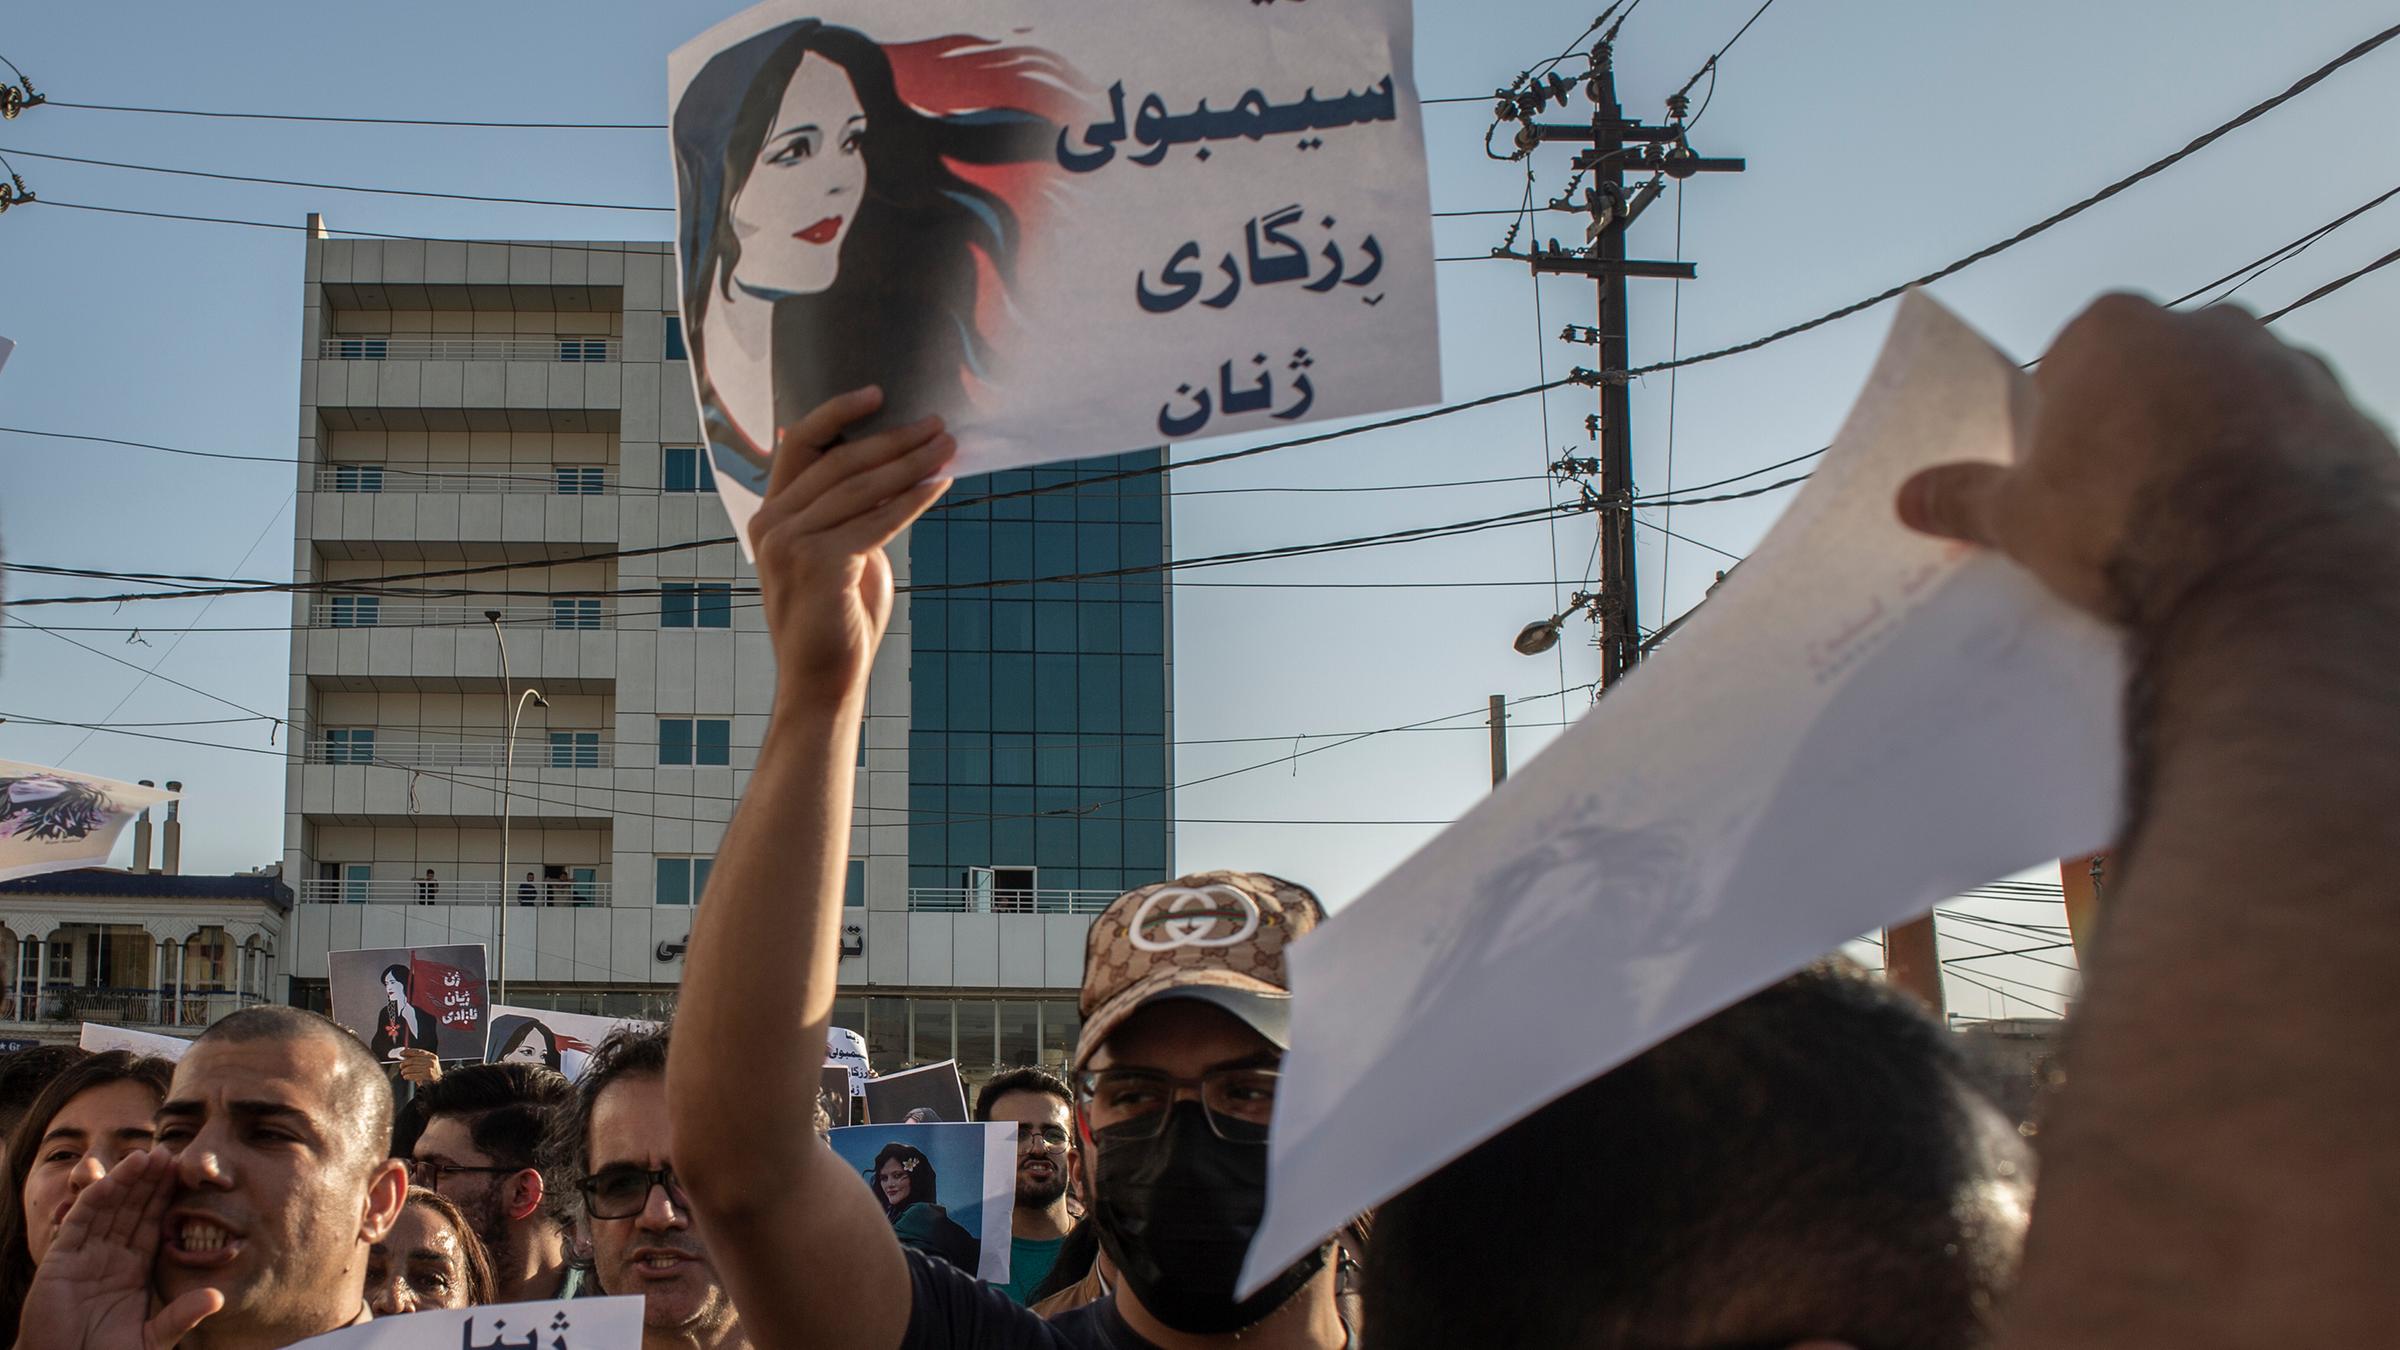 Menschen protestieren und halten Schilder um den Tod von Mahsa Amini zu verurteilen